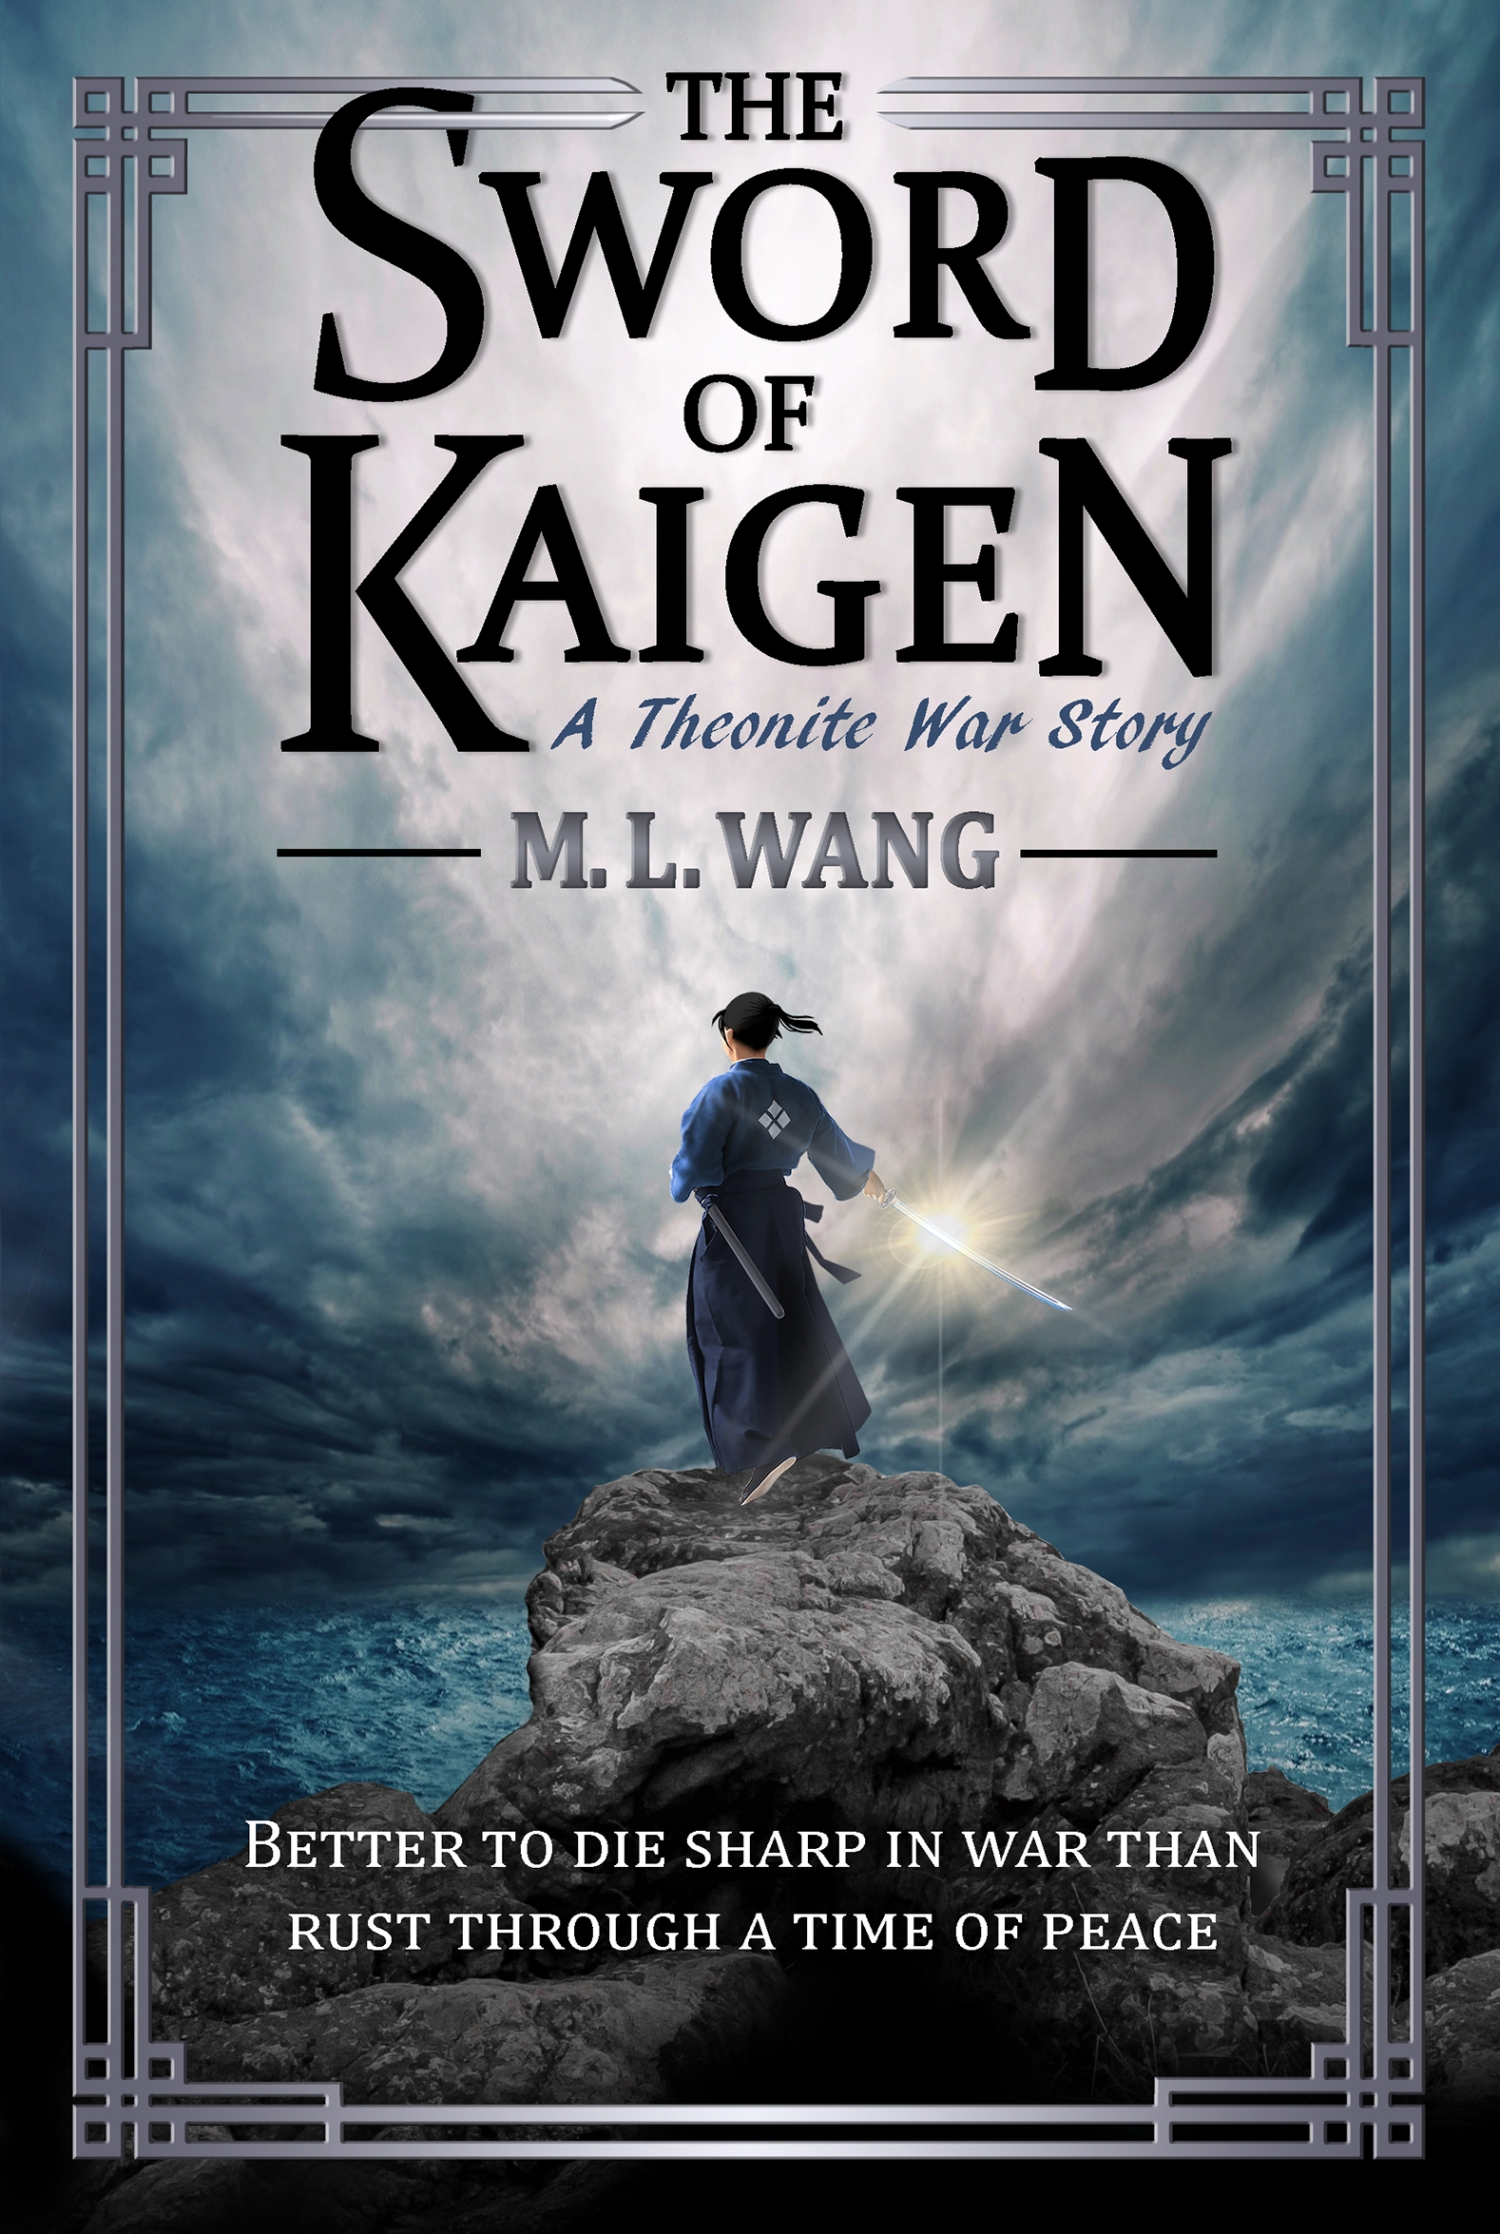 the sword of kaigen review